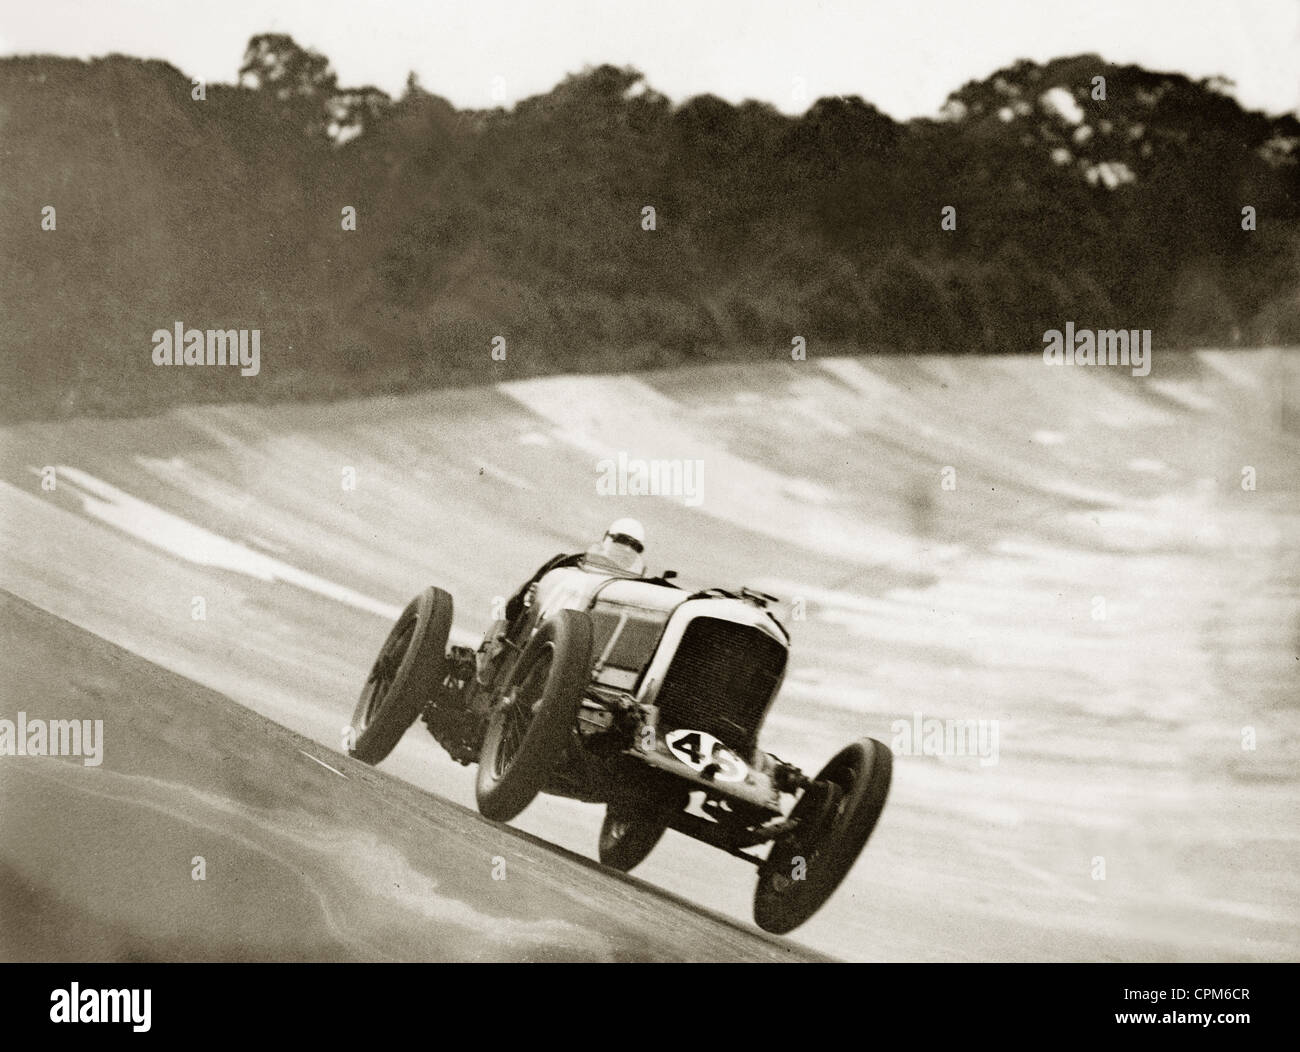 Surrey, England: September 9, 1931.British race car drivers Sir